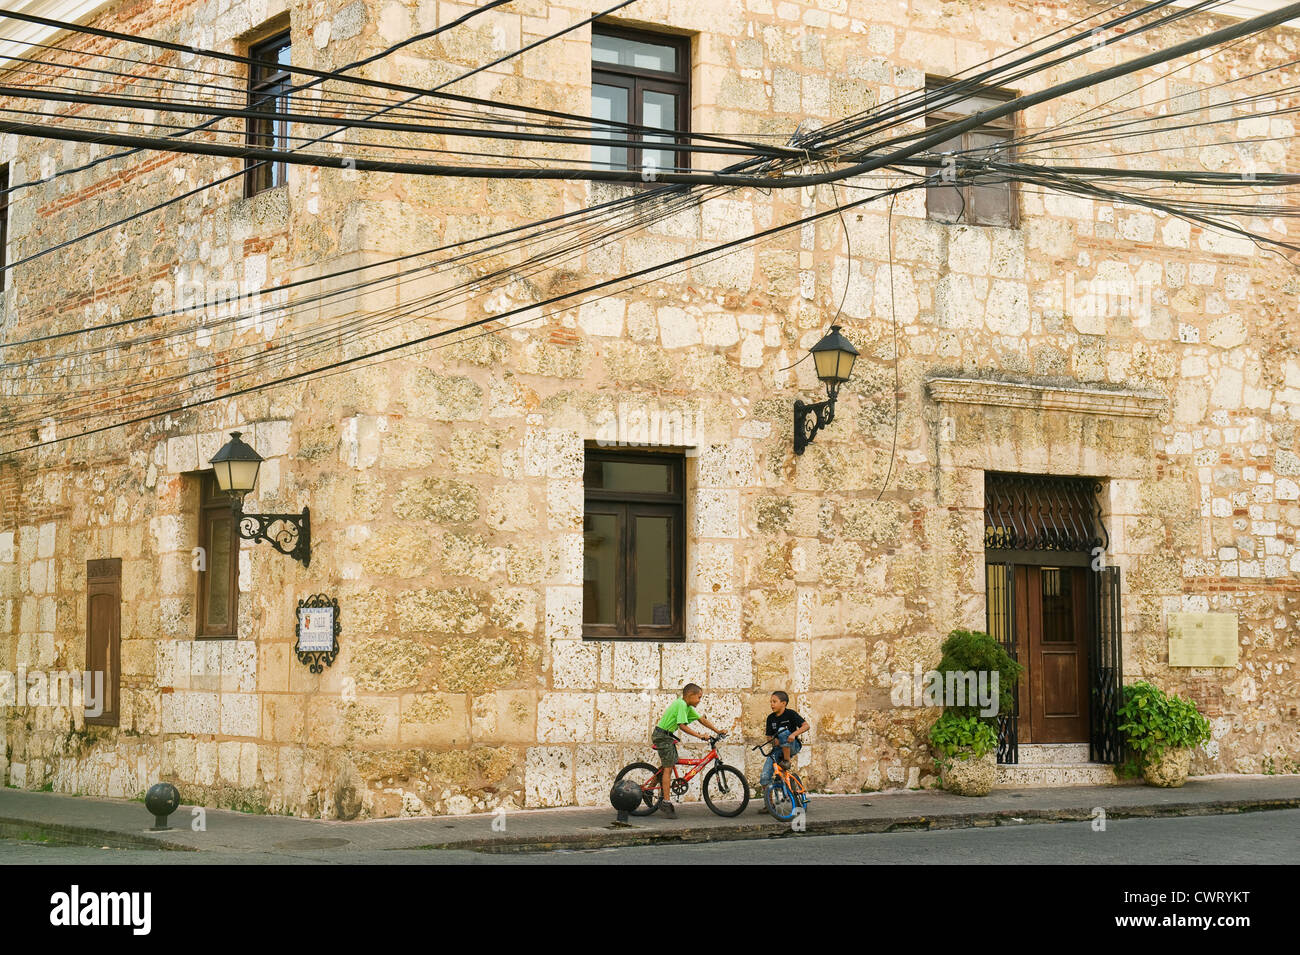 Dominican Republic, Santo Domingo, Colonial center, boys on bikes in historic district Stock Photo